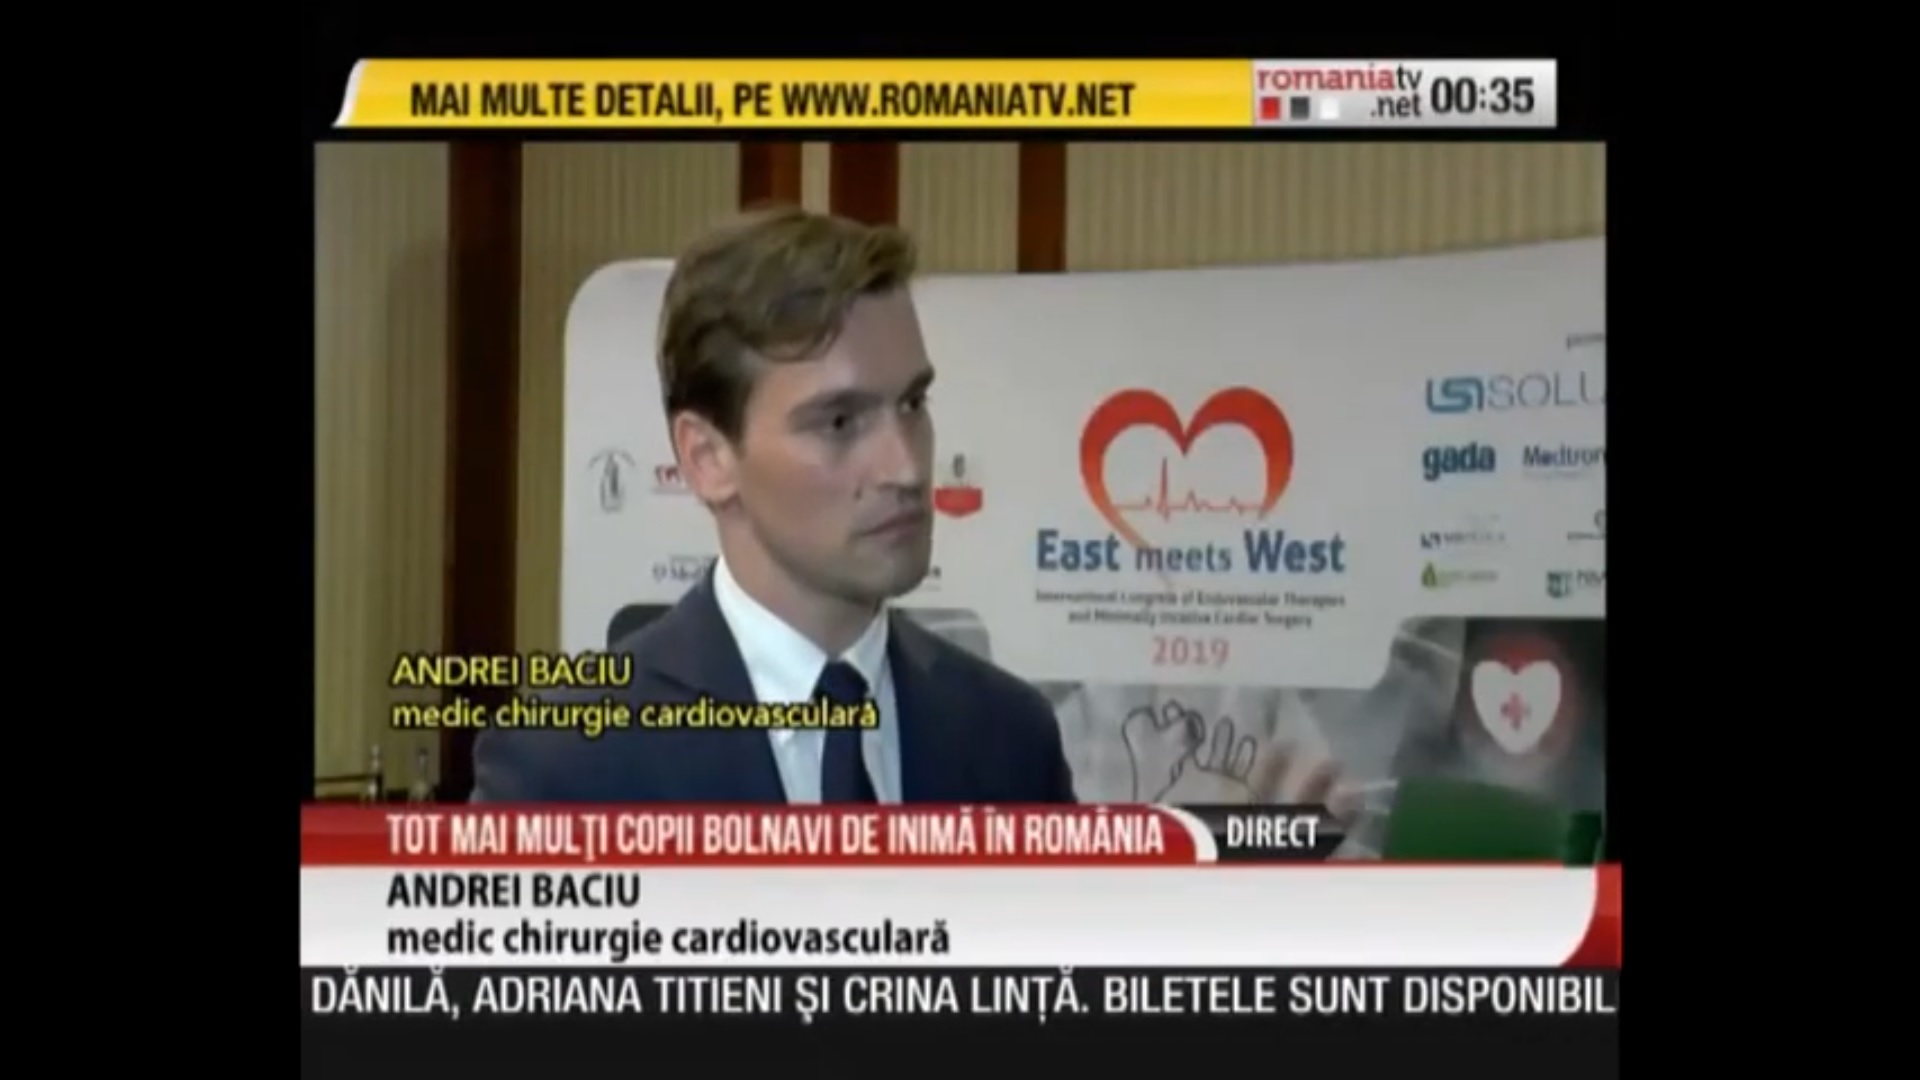 Fotografie a doctorului Andrei Baciu intr-un interviu acordat postului de televiziune România TV